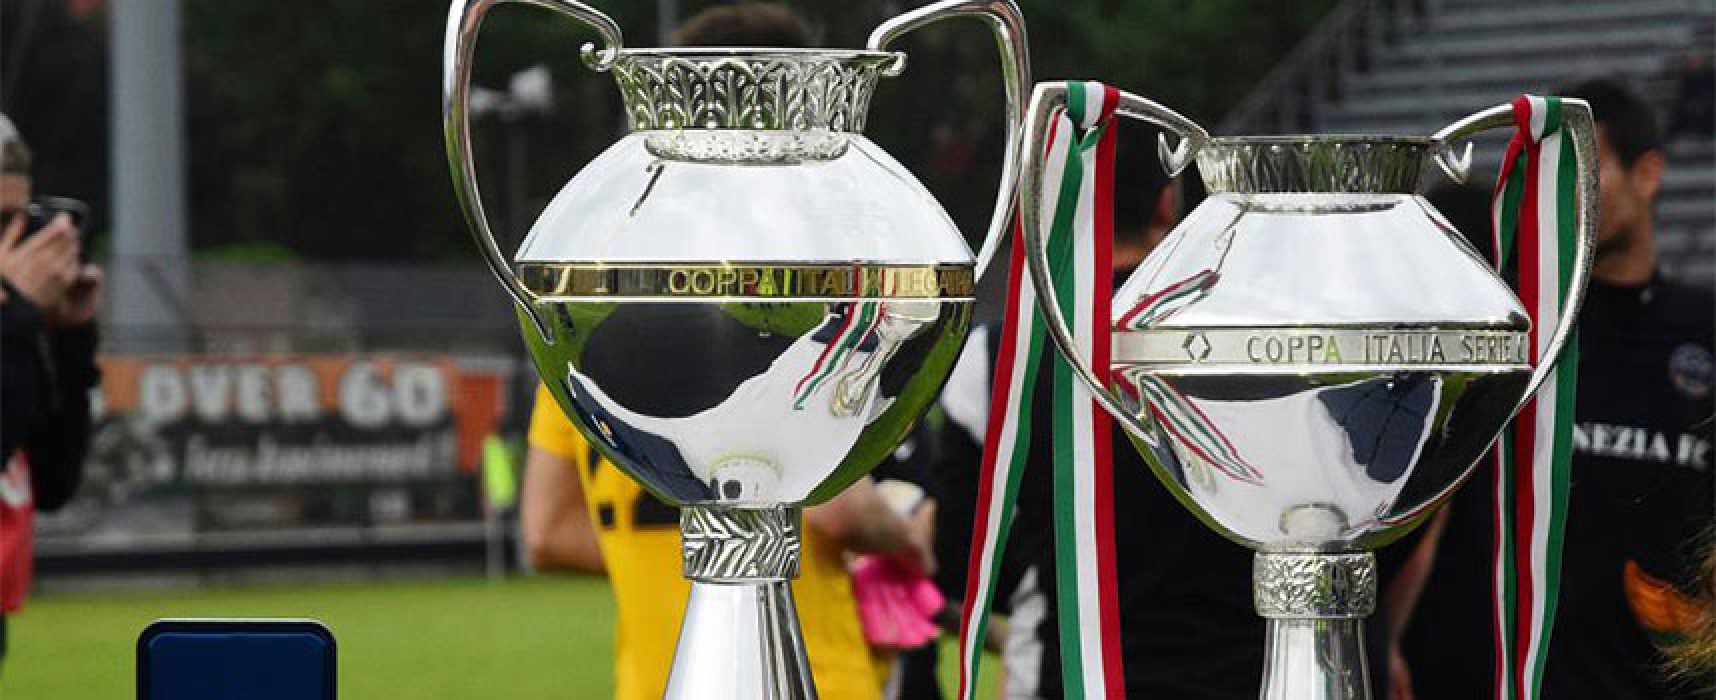 Bisceglie Calcio: tra tanti dubbi una certezza, il 5 agosto c’è la Coppa Italia